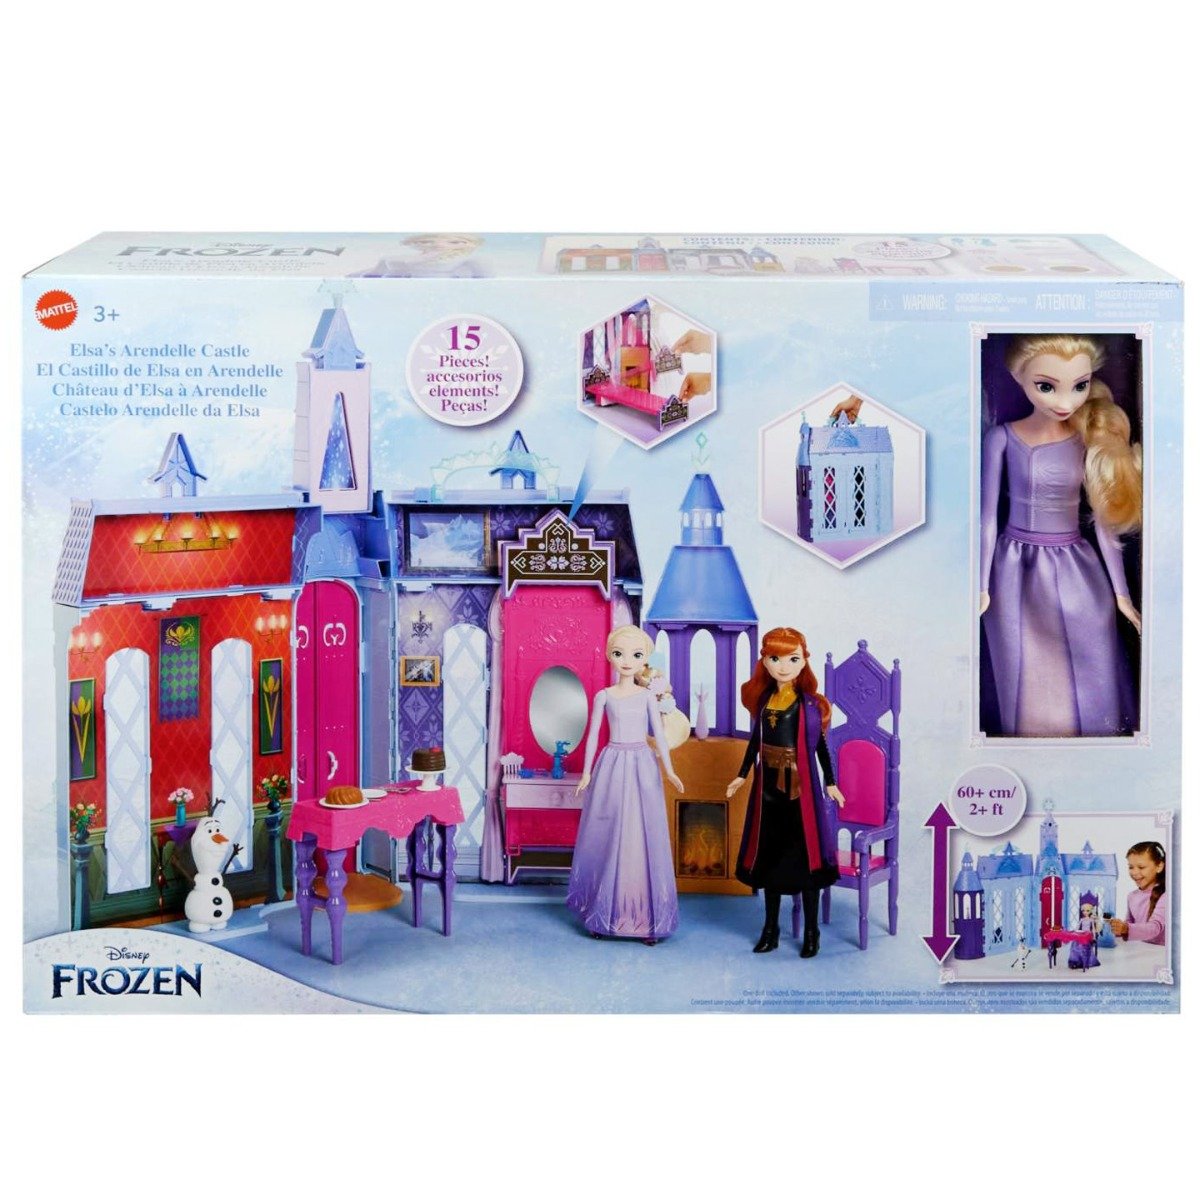 Set de joaca cu papusa, Disney Frozen, Castelul din Arendelle, HLW61